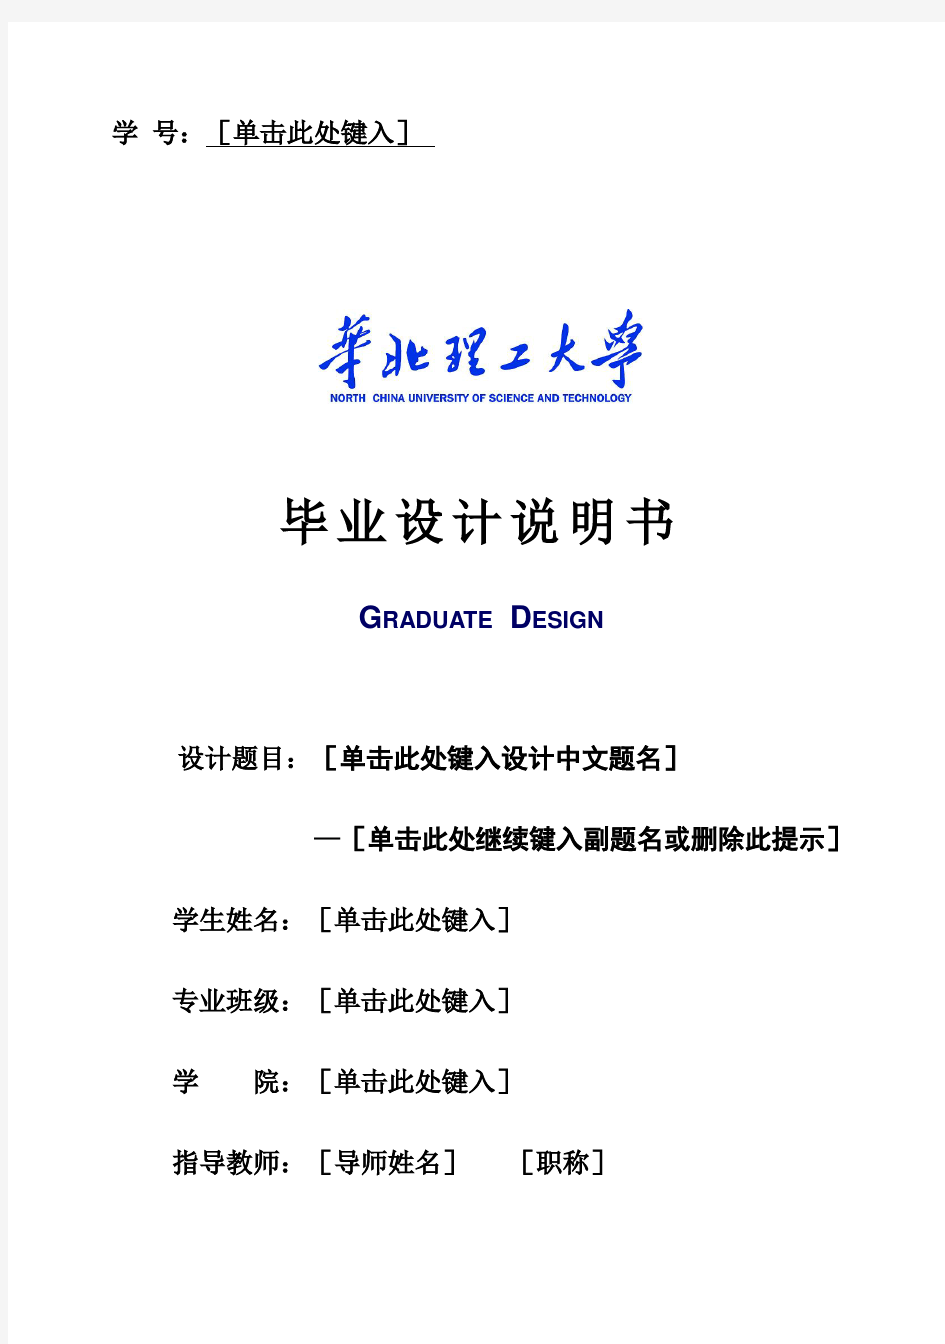 (完整版)华北理工大学本科毕业设计说明书格式示例